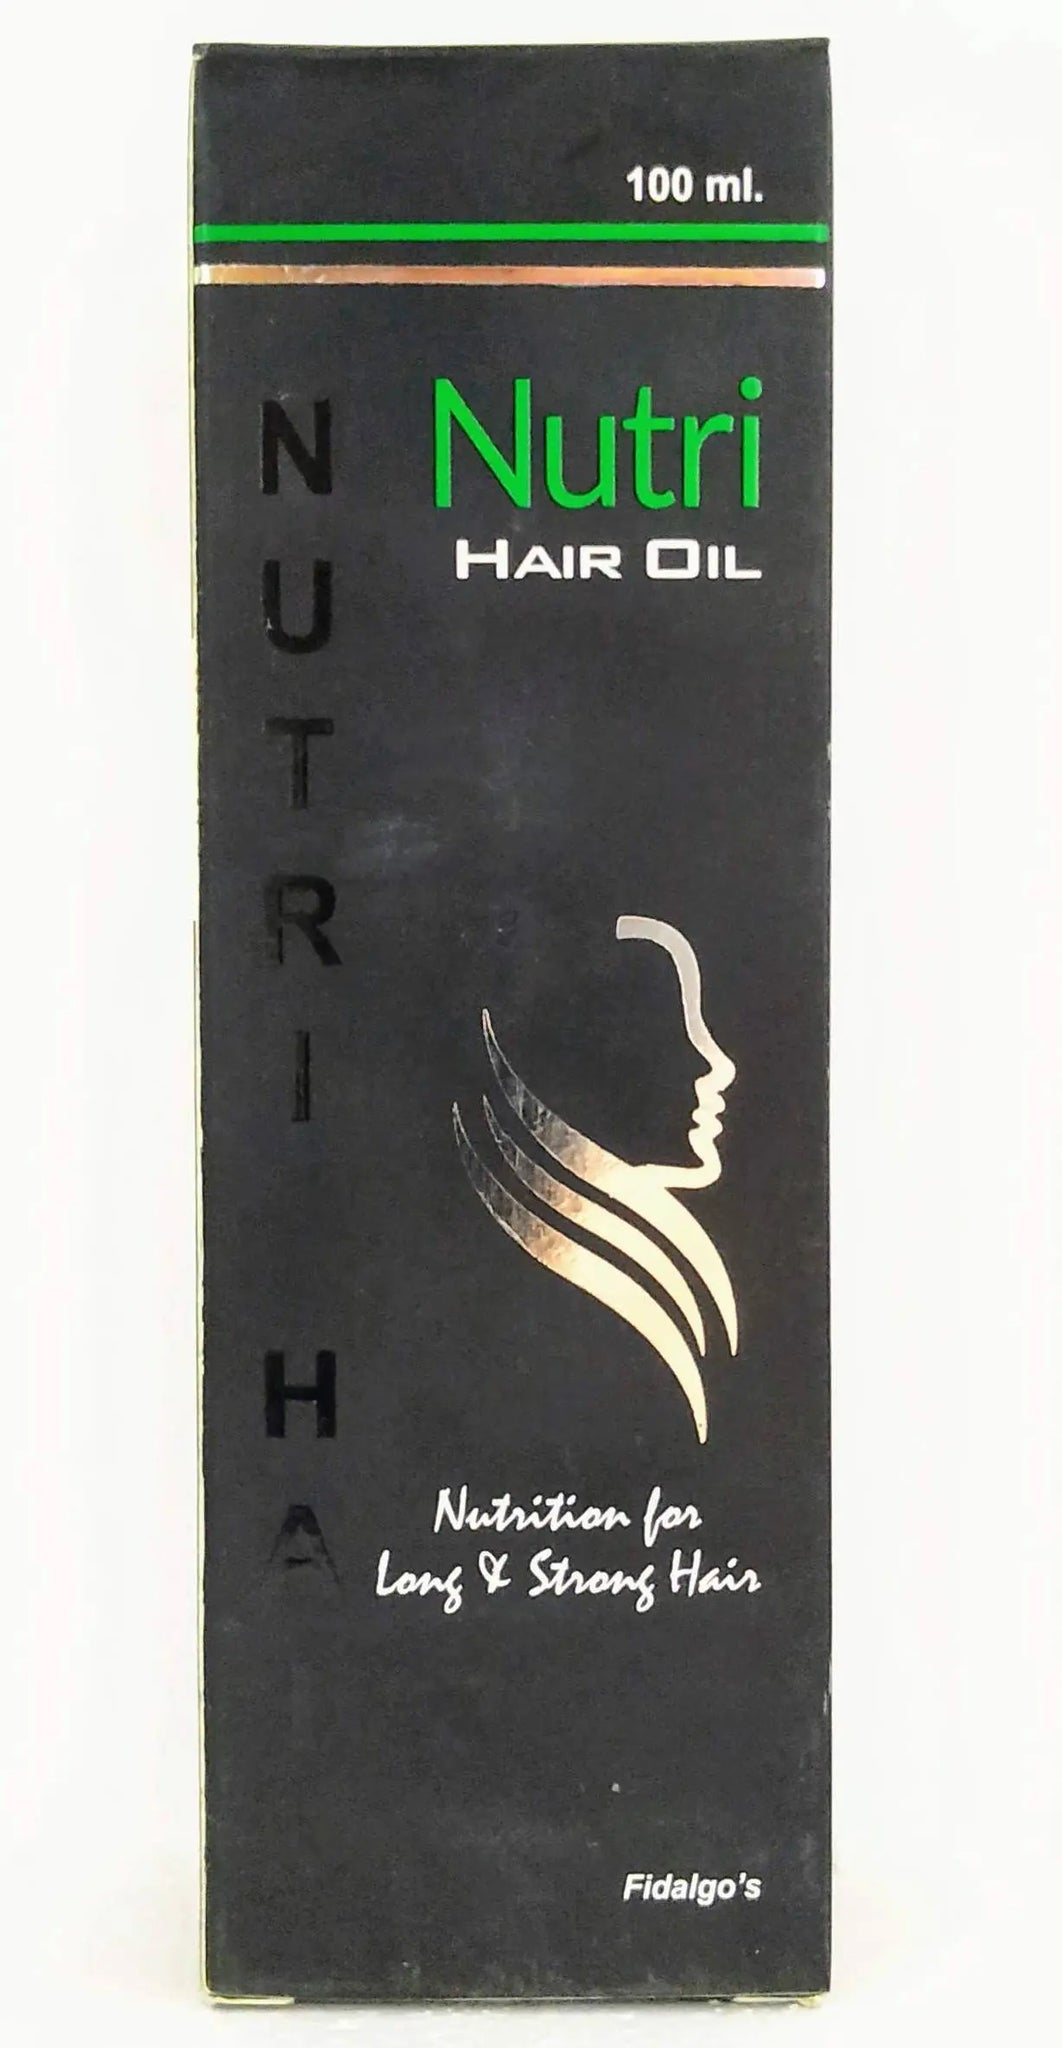 Nutri hair oil 100ml Fidalgo